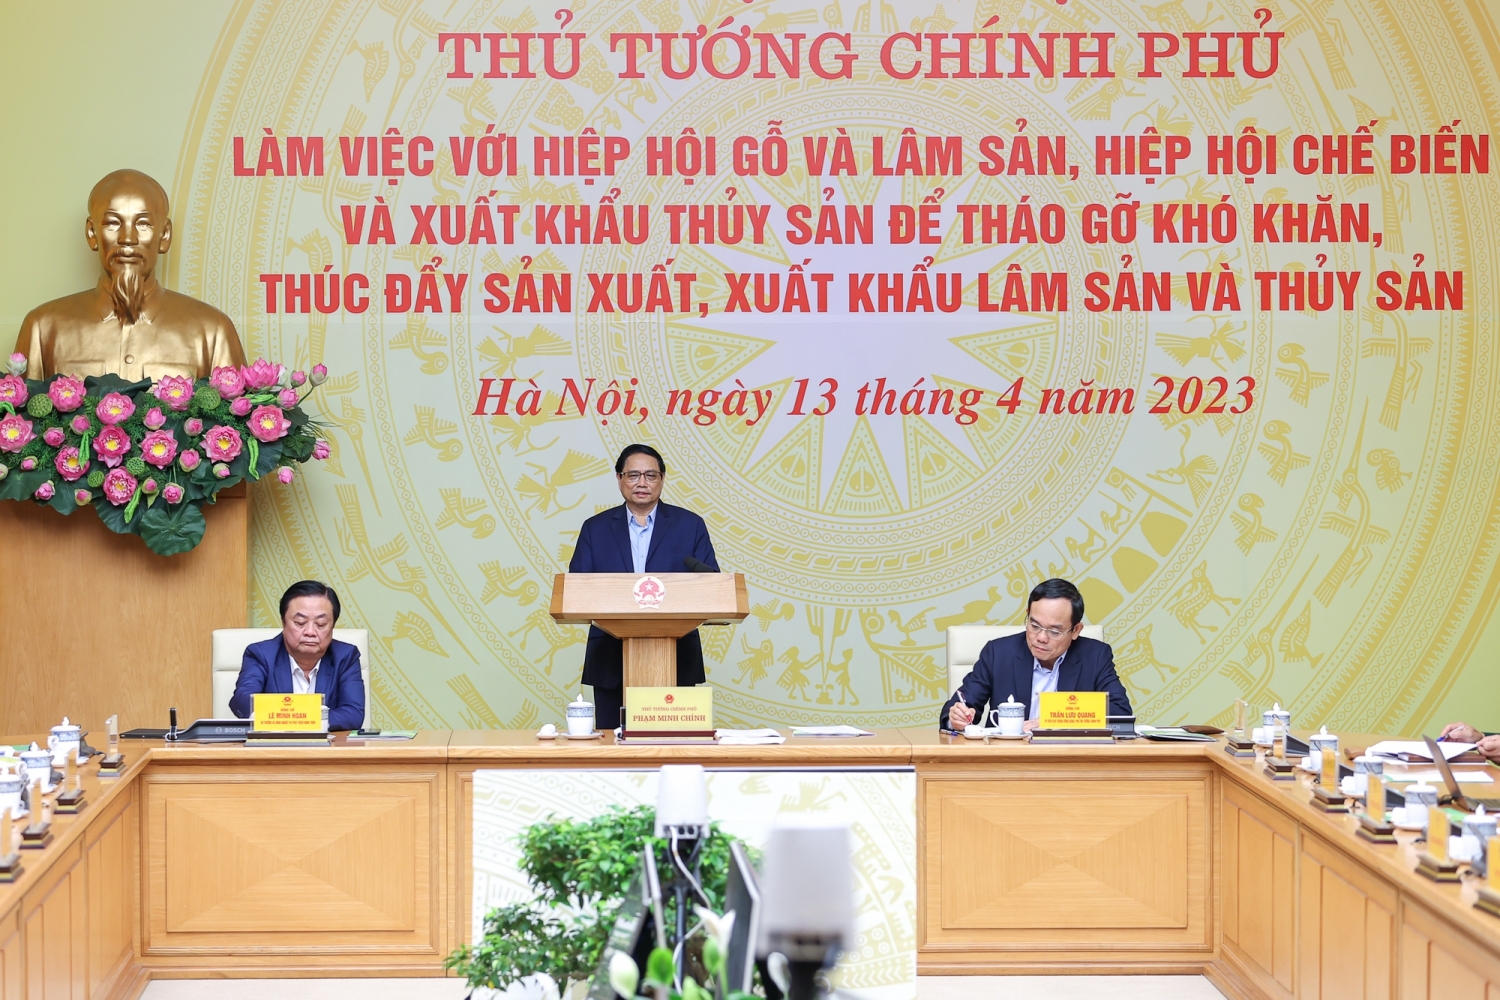 Thủ tướng Phạm Minh Chính chủ trì Hội nghị làm việc với Hiệp hội Gỗ và lâm sản, Hiệp hội Chế biến và xuất khẩu thủy sản Việt Nam.